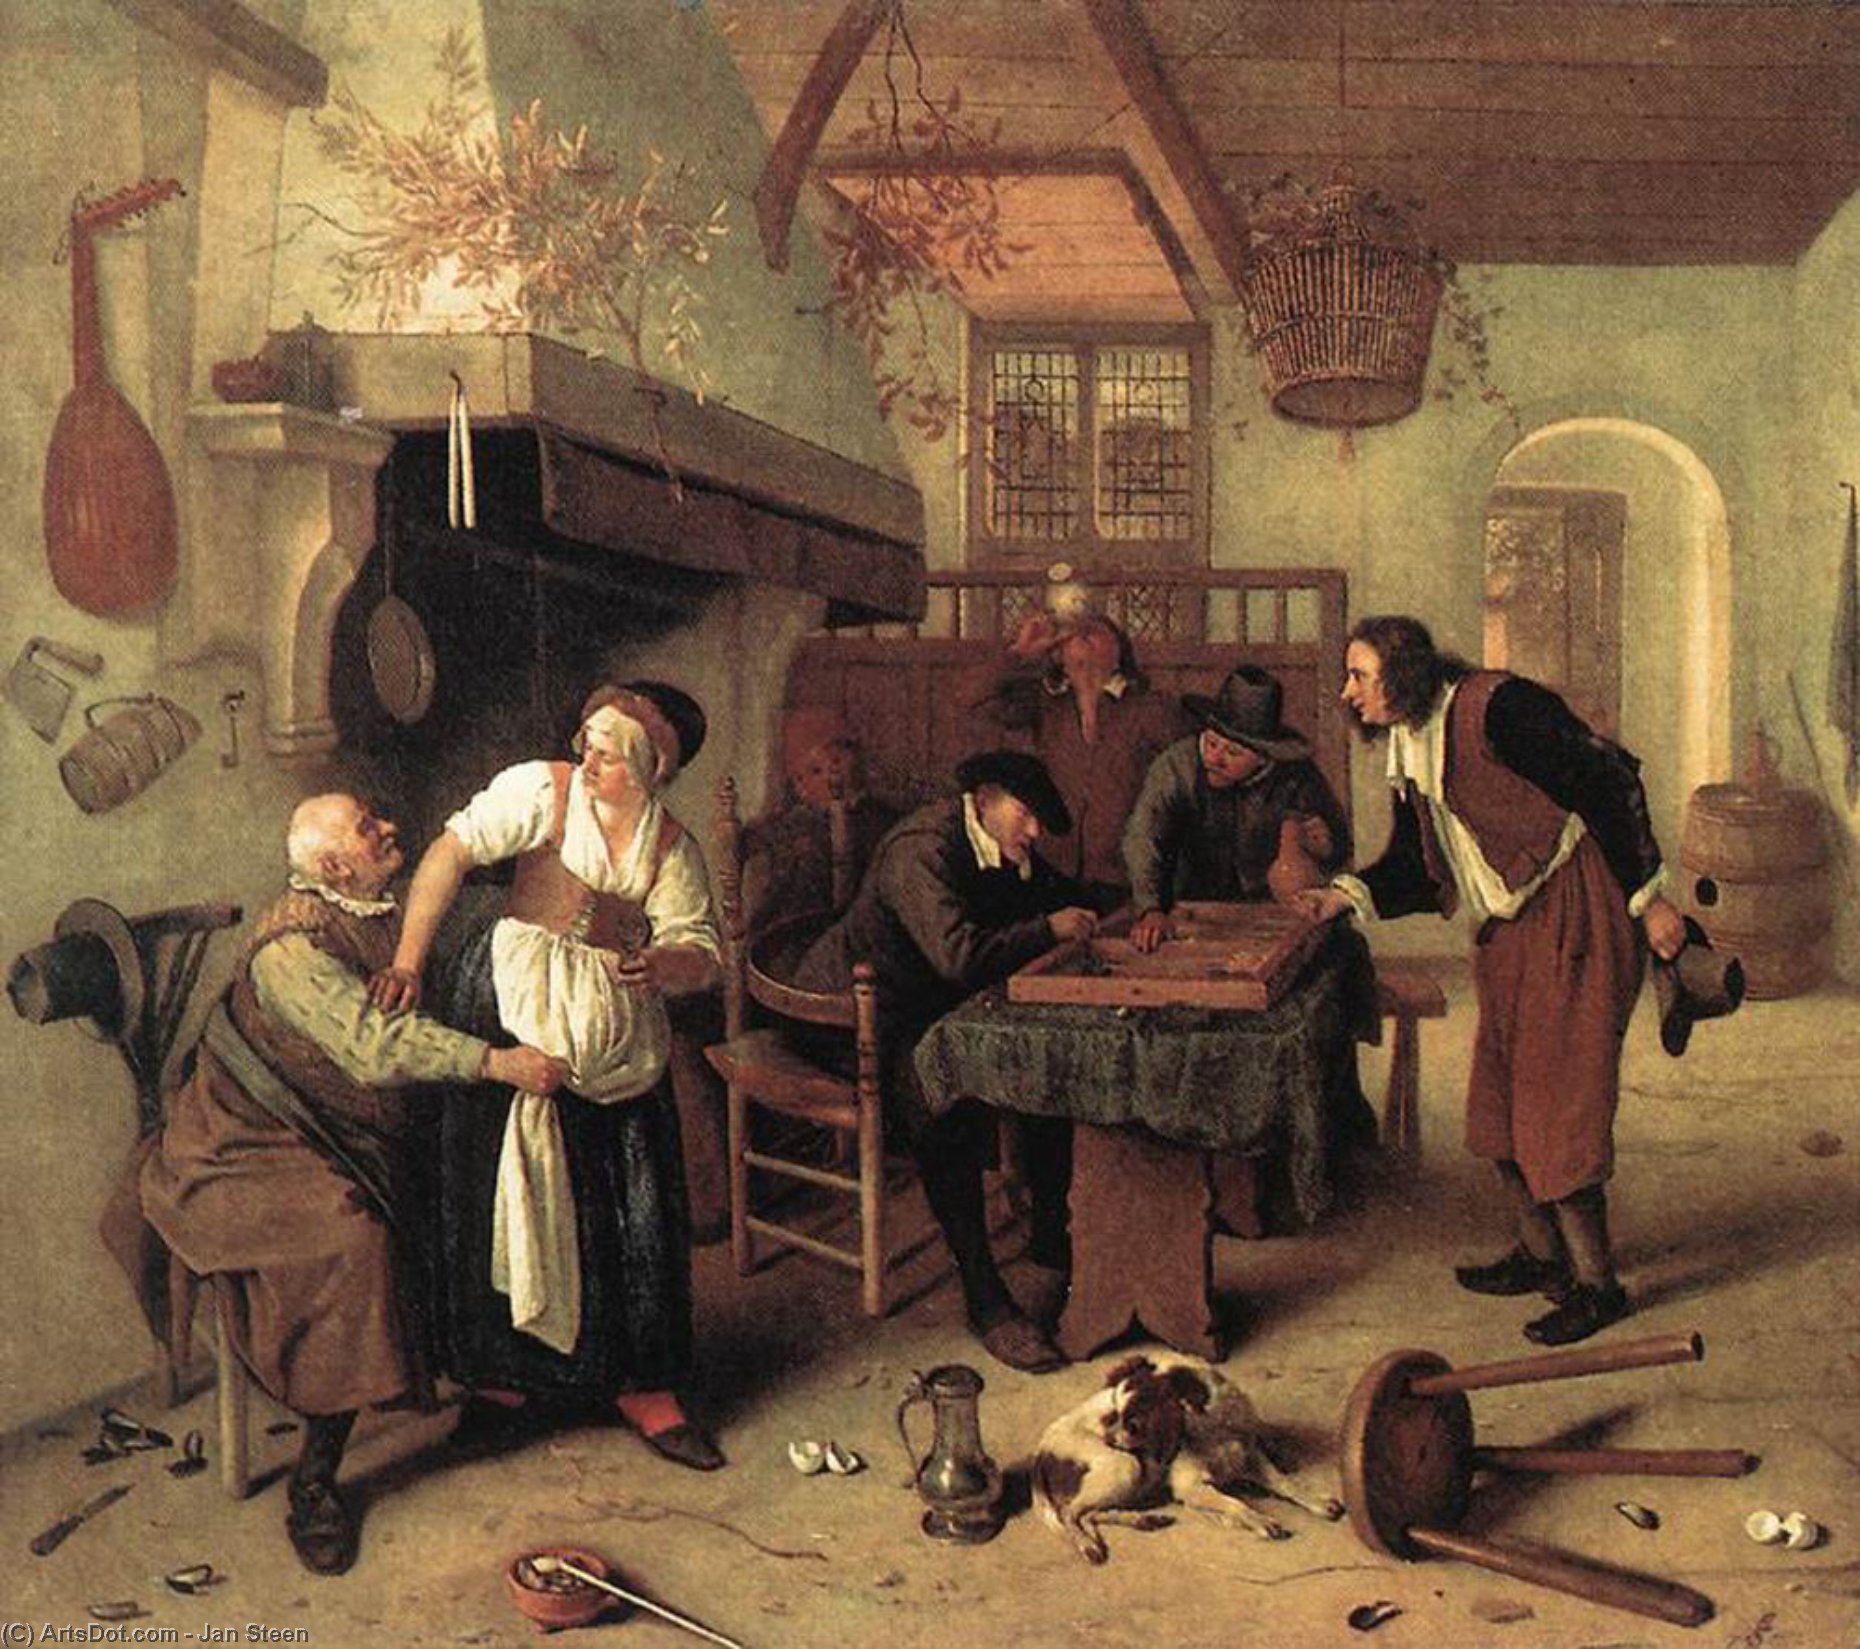 WikiOO.org - Encyclopedia of Fine Arts - Lukisan, Artwork Jan Steen - In the Tavern